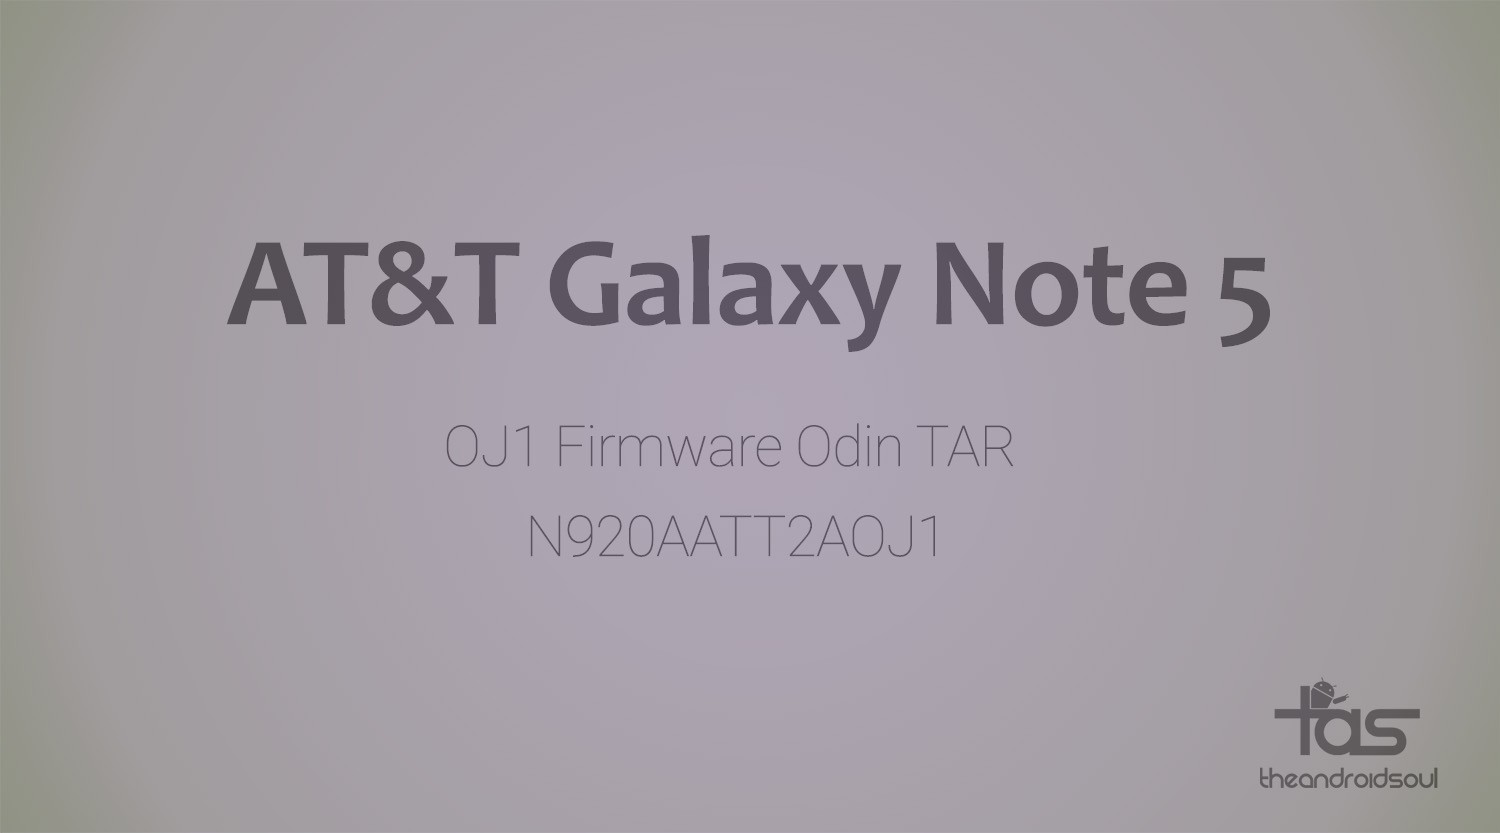 Descargue el firmware N920AATT2AOJ1 de AT&T Galaxy Note 5 [Update, Unbrick, Fix, Unroot, etc.]